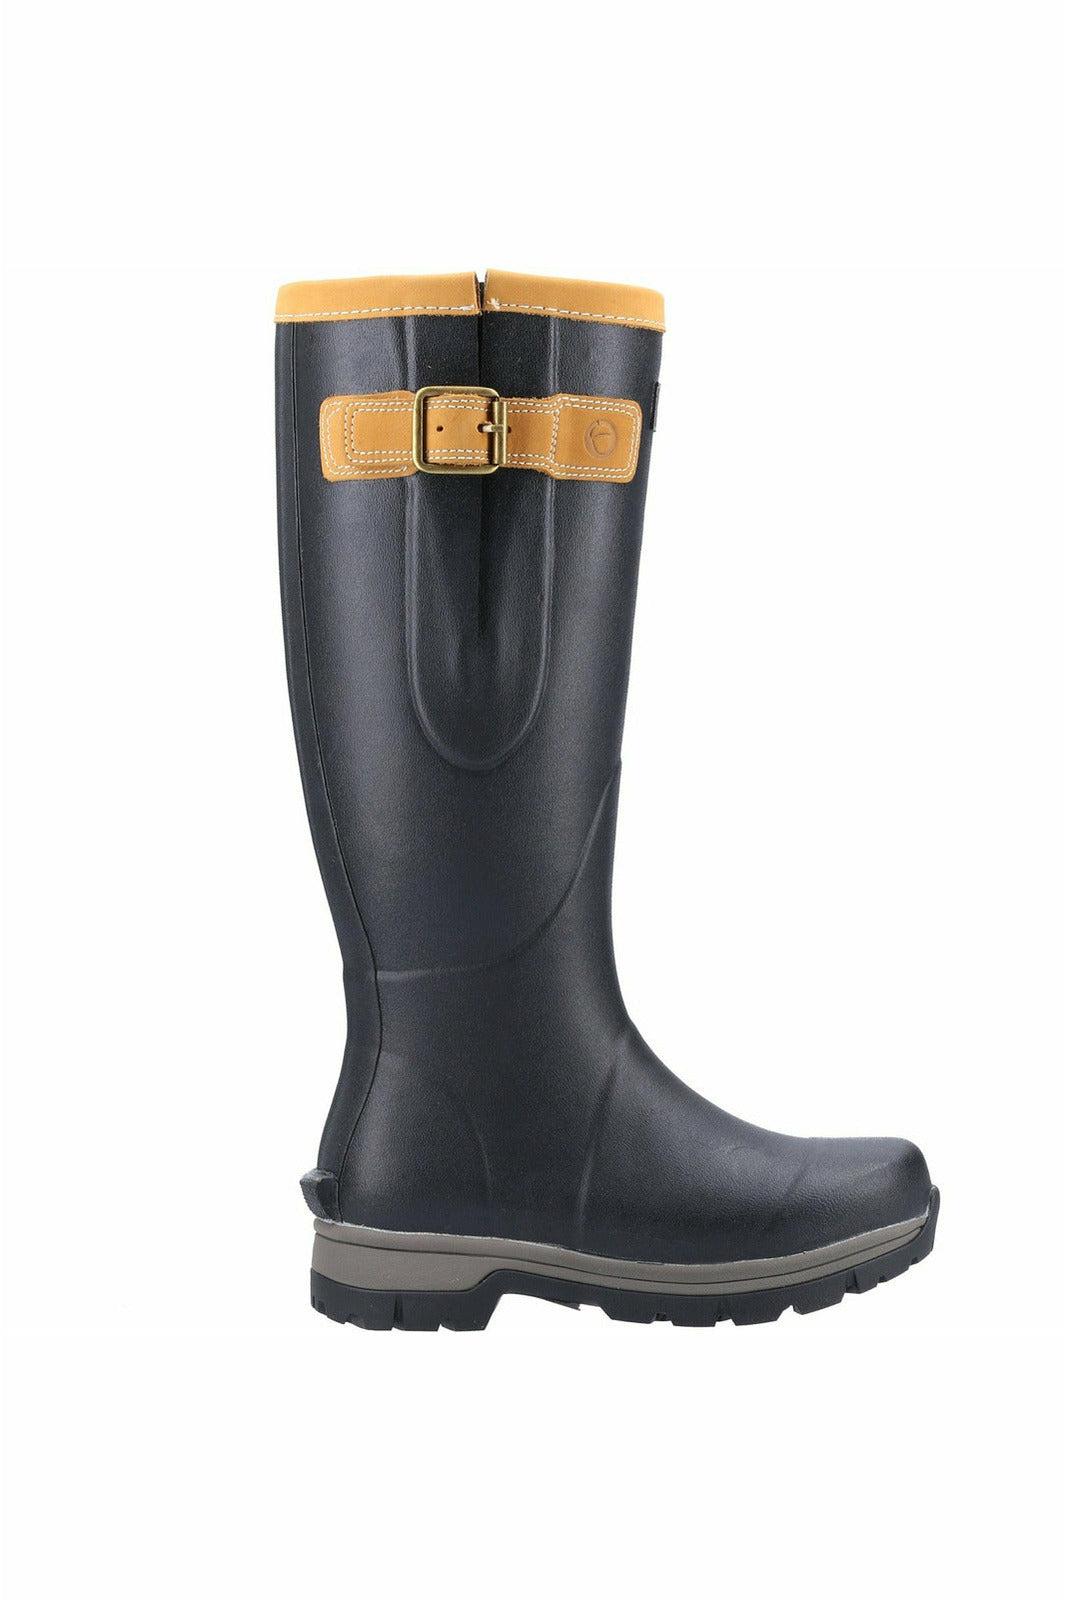 Cotswold - Stratus Ladies & mens premium Wellington Boot